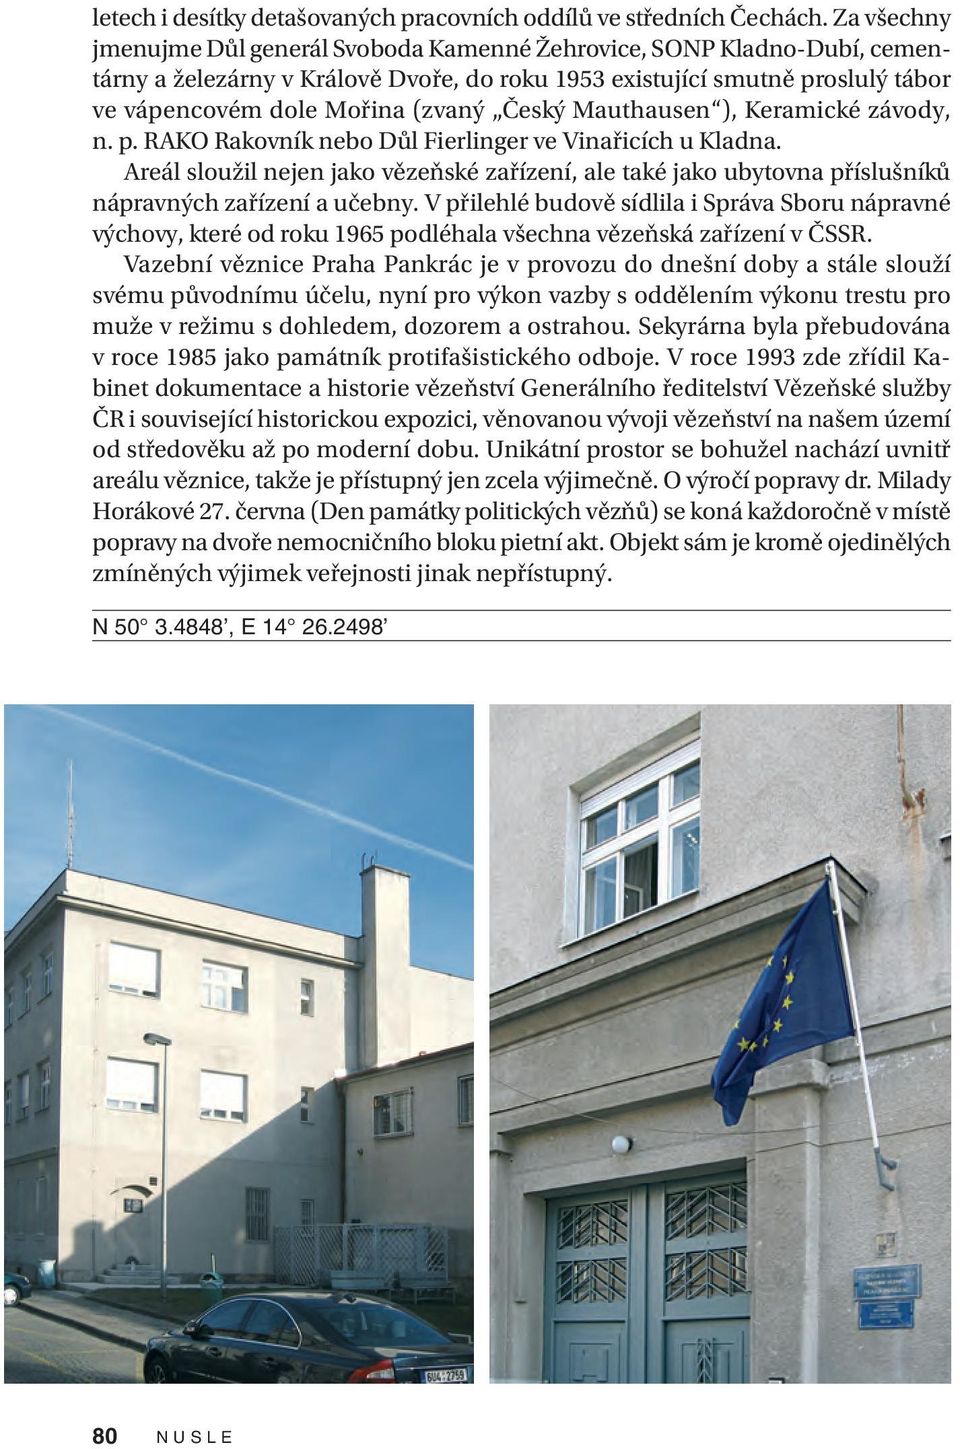 Český Mauthausen ), Keramické závody, n. p. RAKO Rakovník nebo Důl Fierlinger ve Vinařicích u Kladna.